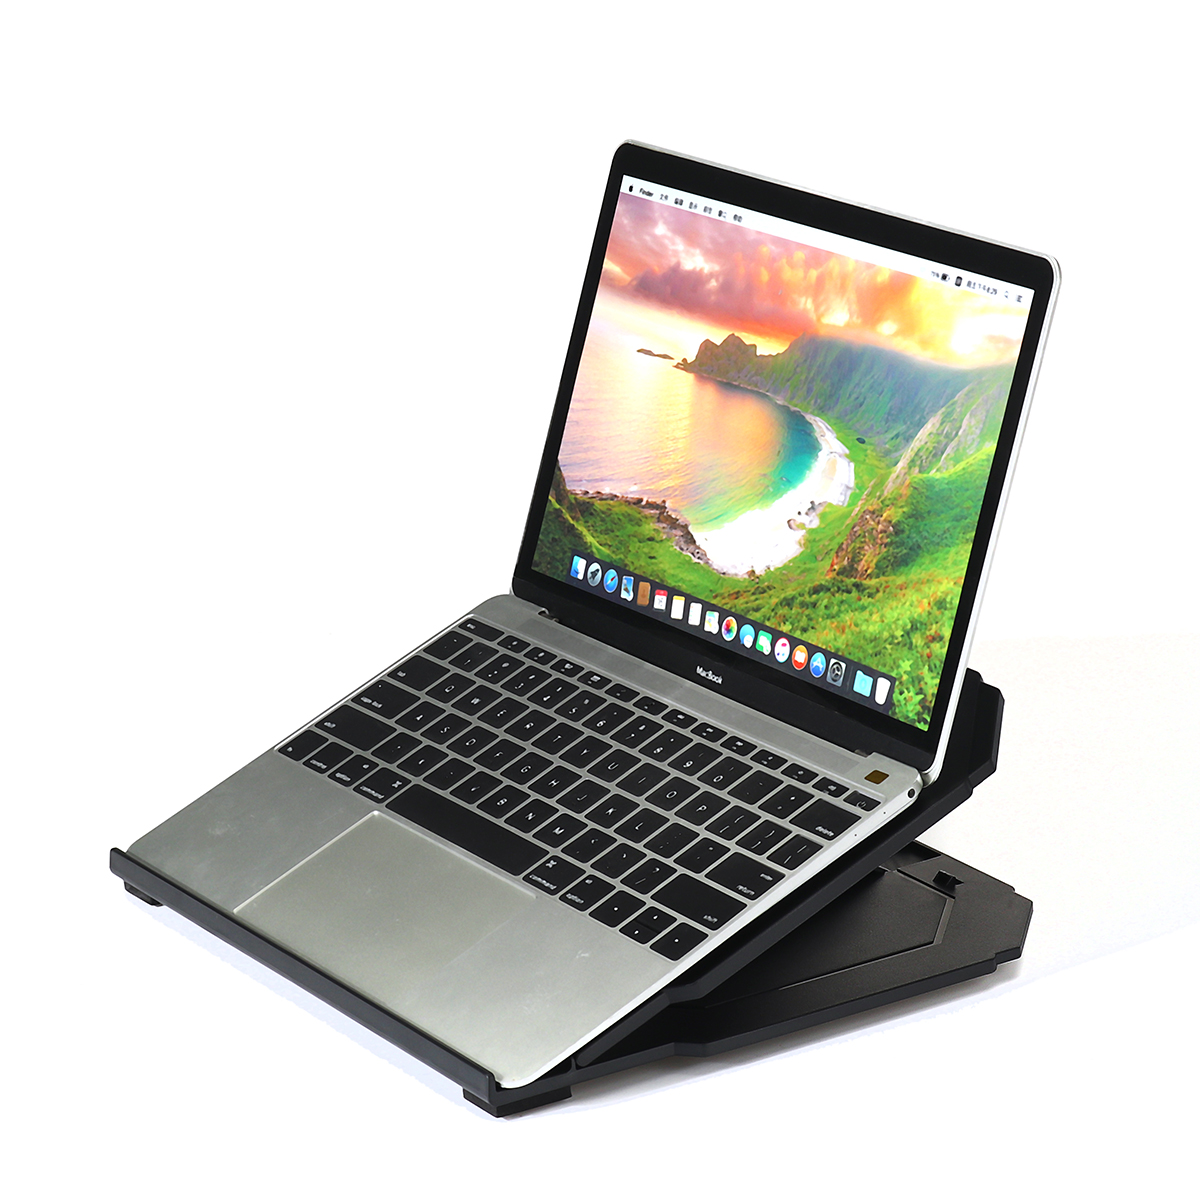 

Adjustable Plastic Laptop Stand Holder Desk Tablet Cooling Bracket With Phone Holder For Laptop MacBook Tablet